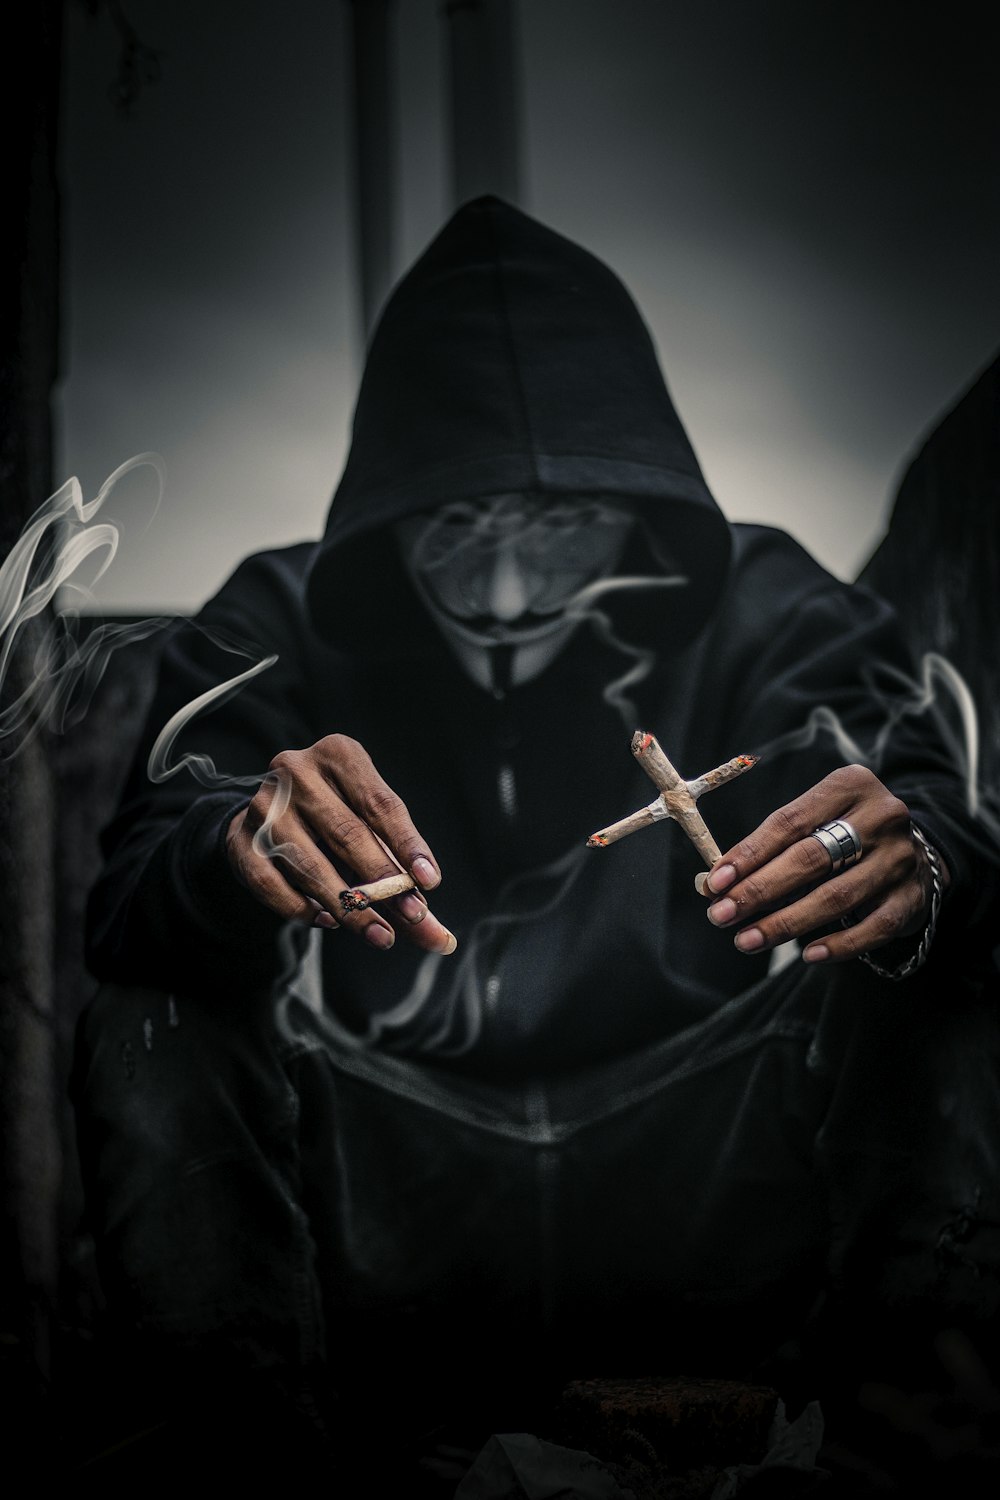 persona in maschera di Guy Fawkes che tiene sigarette accese a forma di croce alla sua sinistra con joice illuminato sulla mano destra